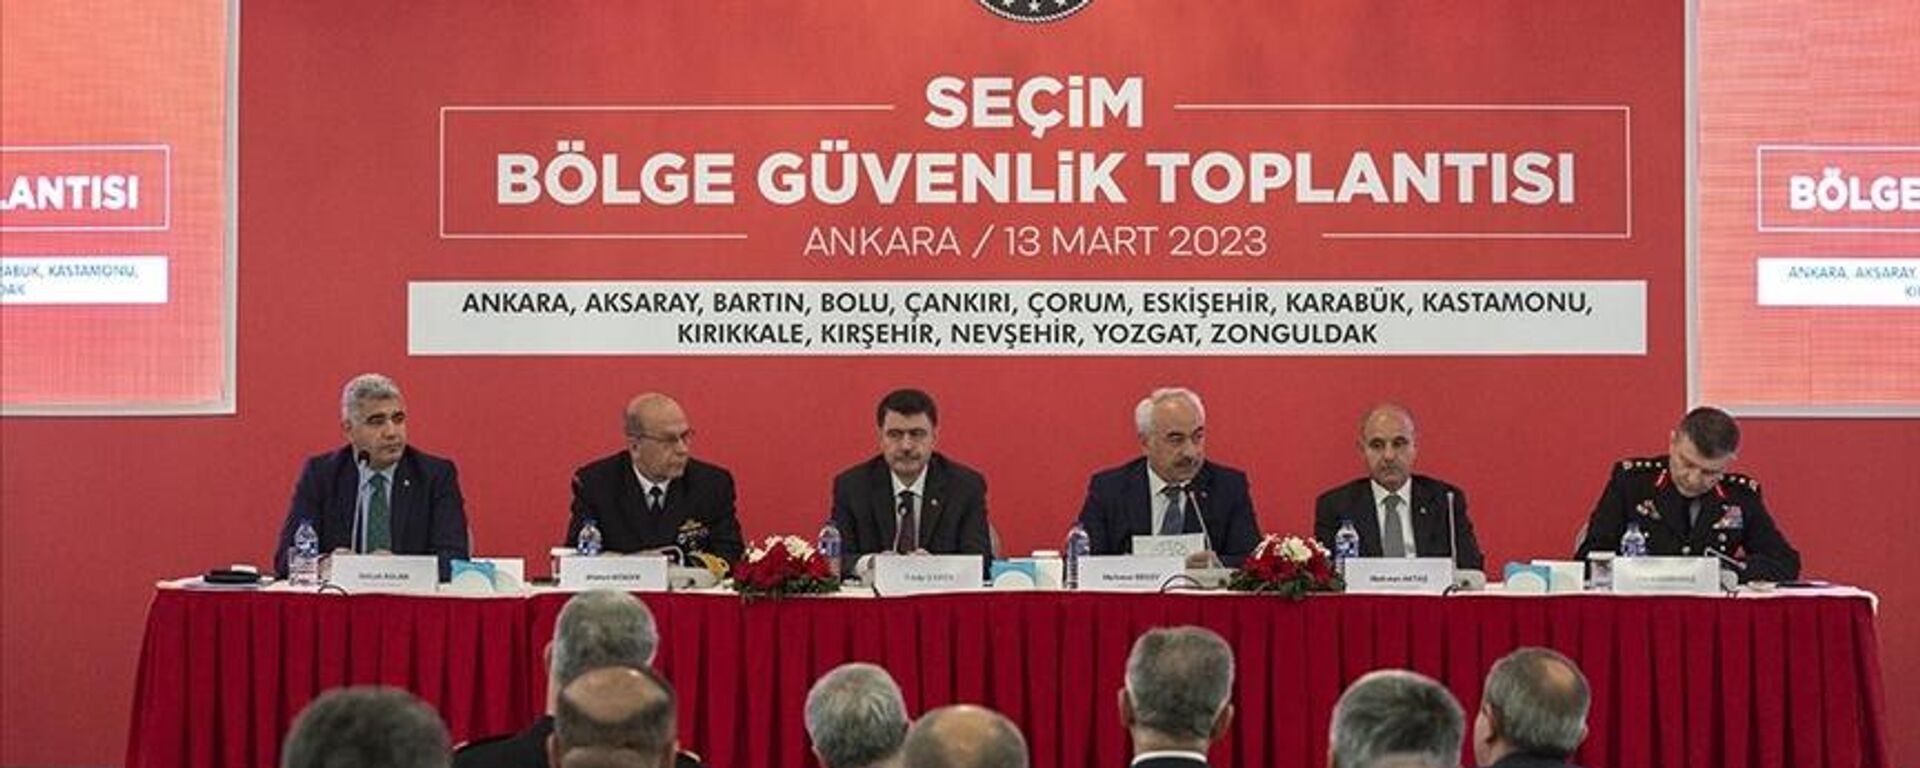 Ankara'da Seçim Bölge Güvenlik Toplantısı yapıldı - Sputnik Türkiye, 1920, 13.03.2023